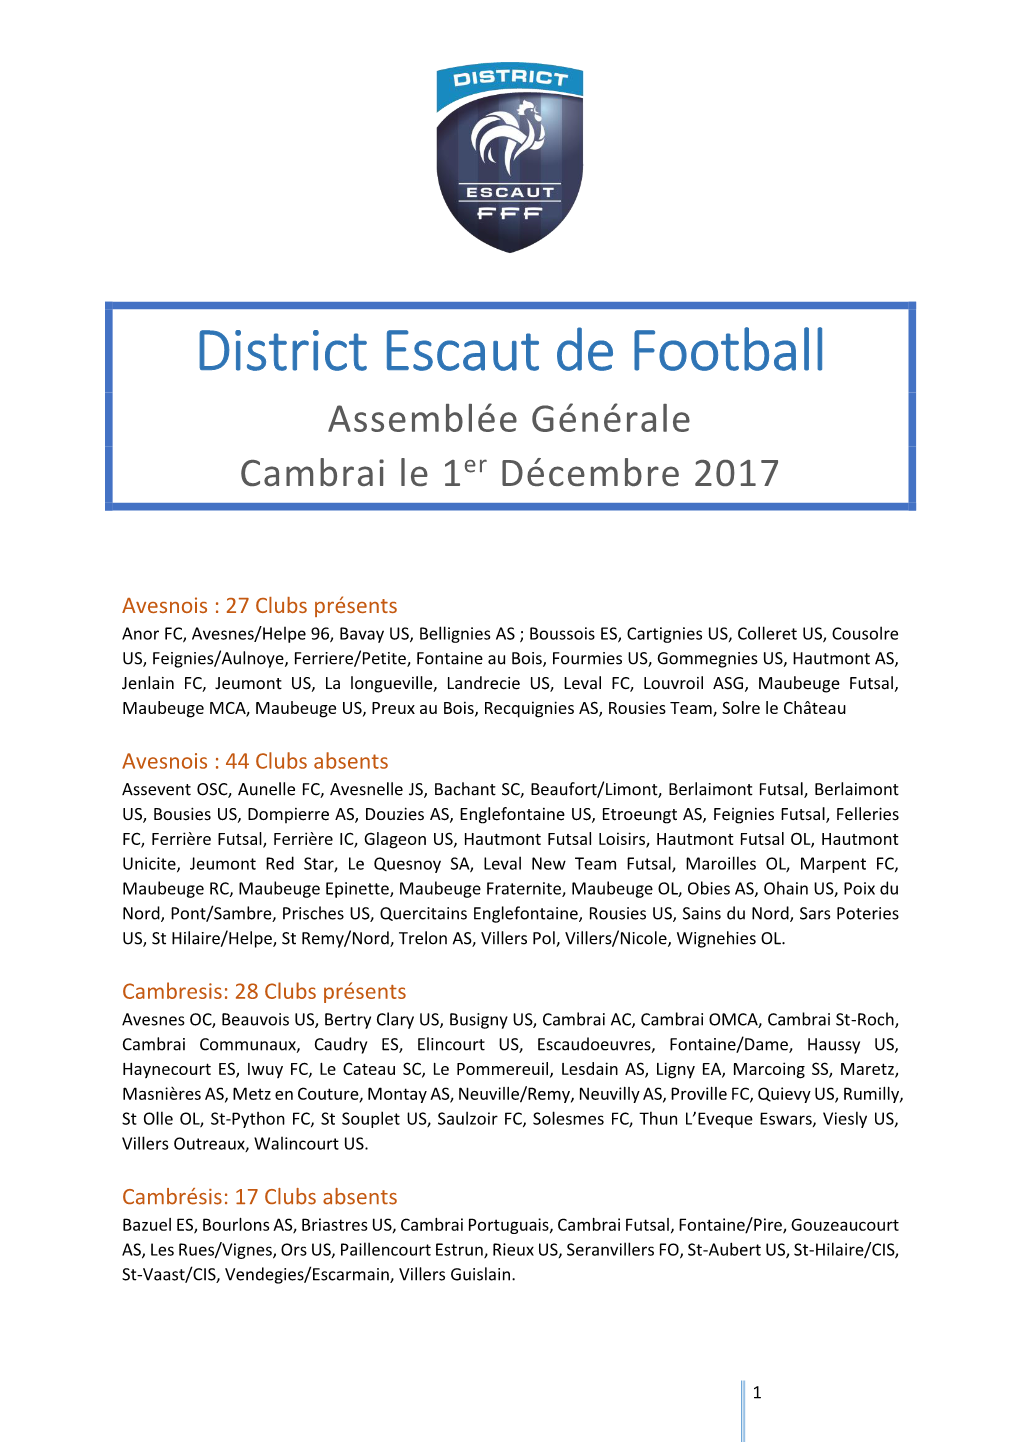 District Escaut De Football Assemblée Générale Cambrai Le 1Er Décembre 2017